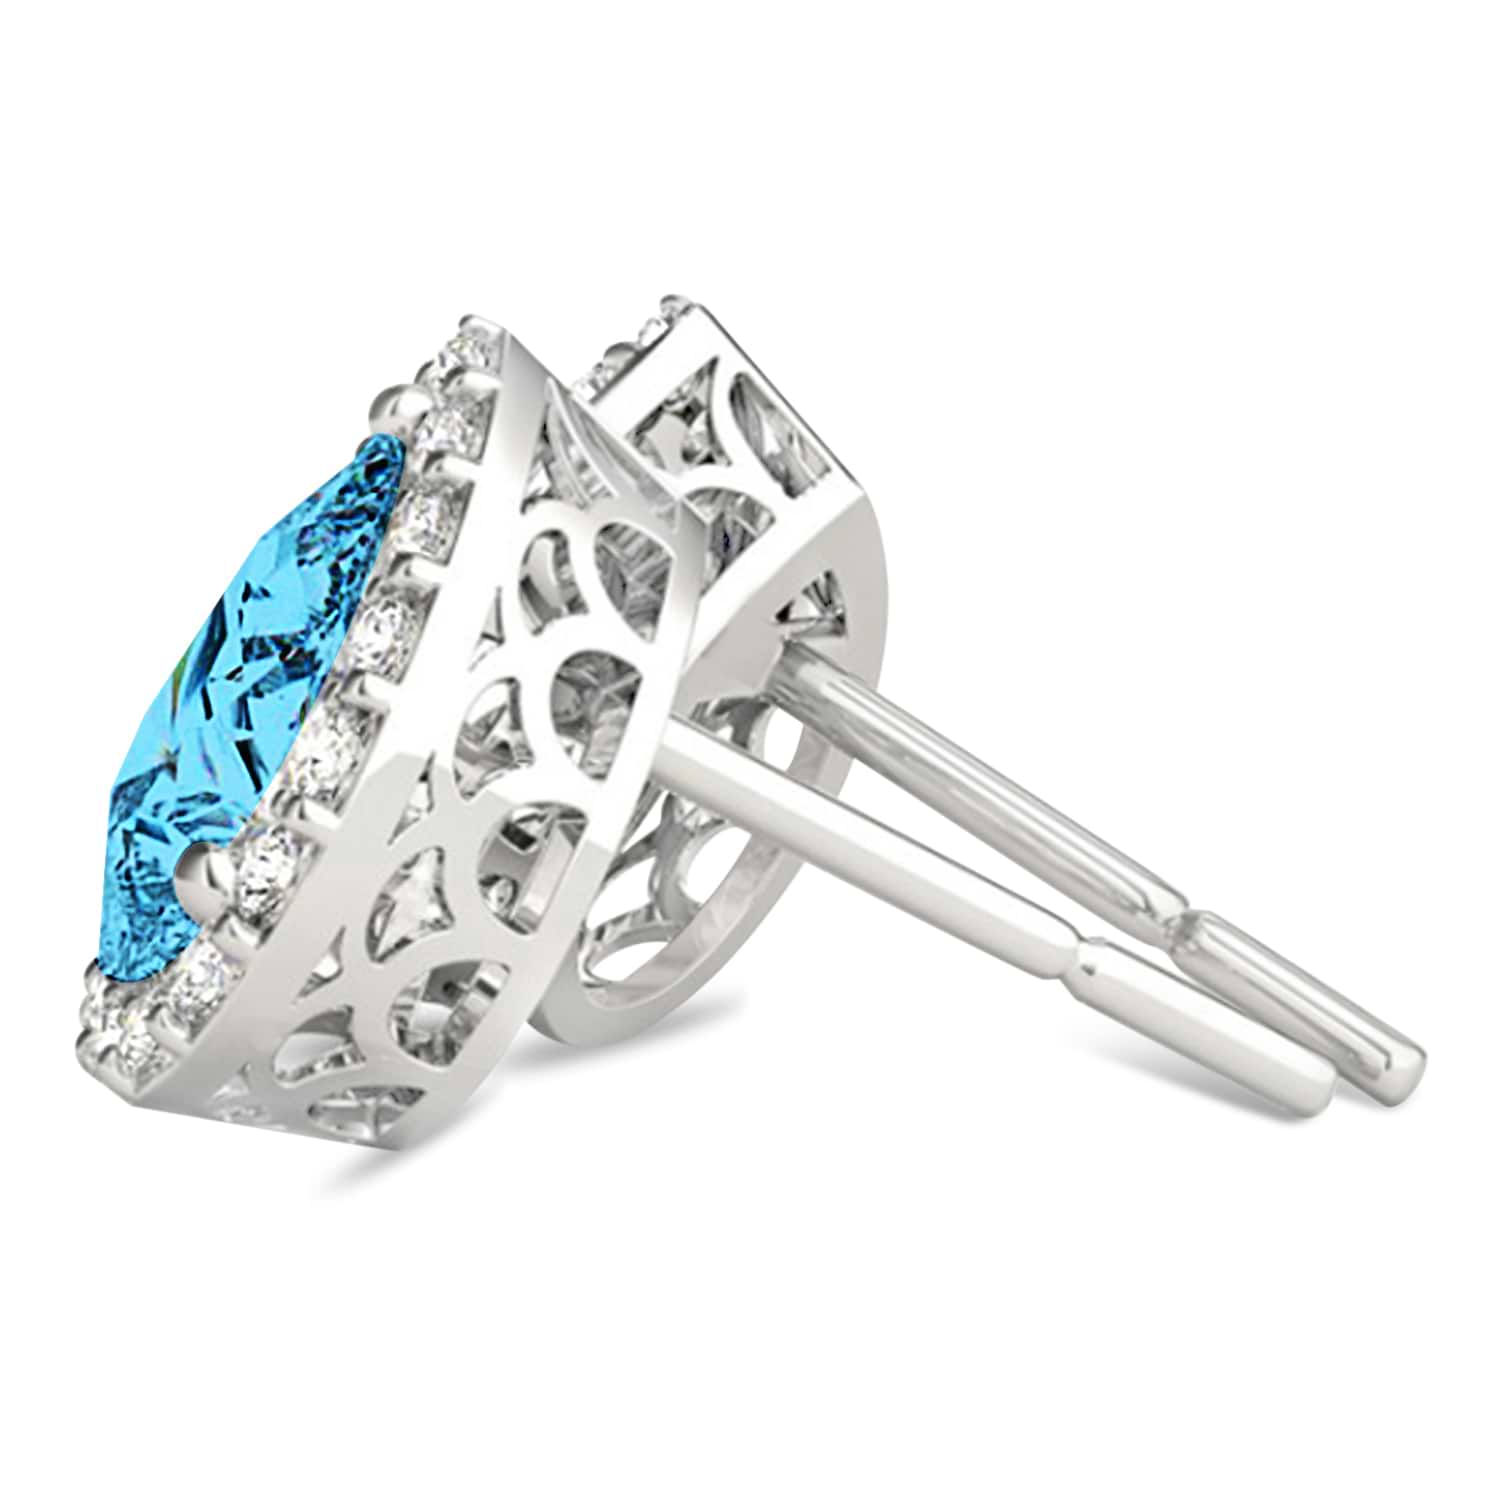 Teardrop Cut Blue & White Diamond Halo Earrings 14k White Gold (1.66ct)